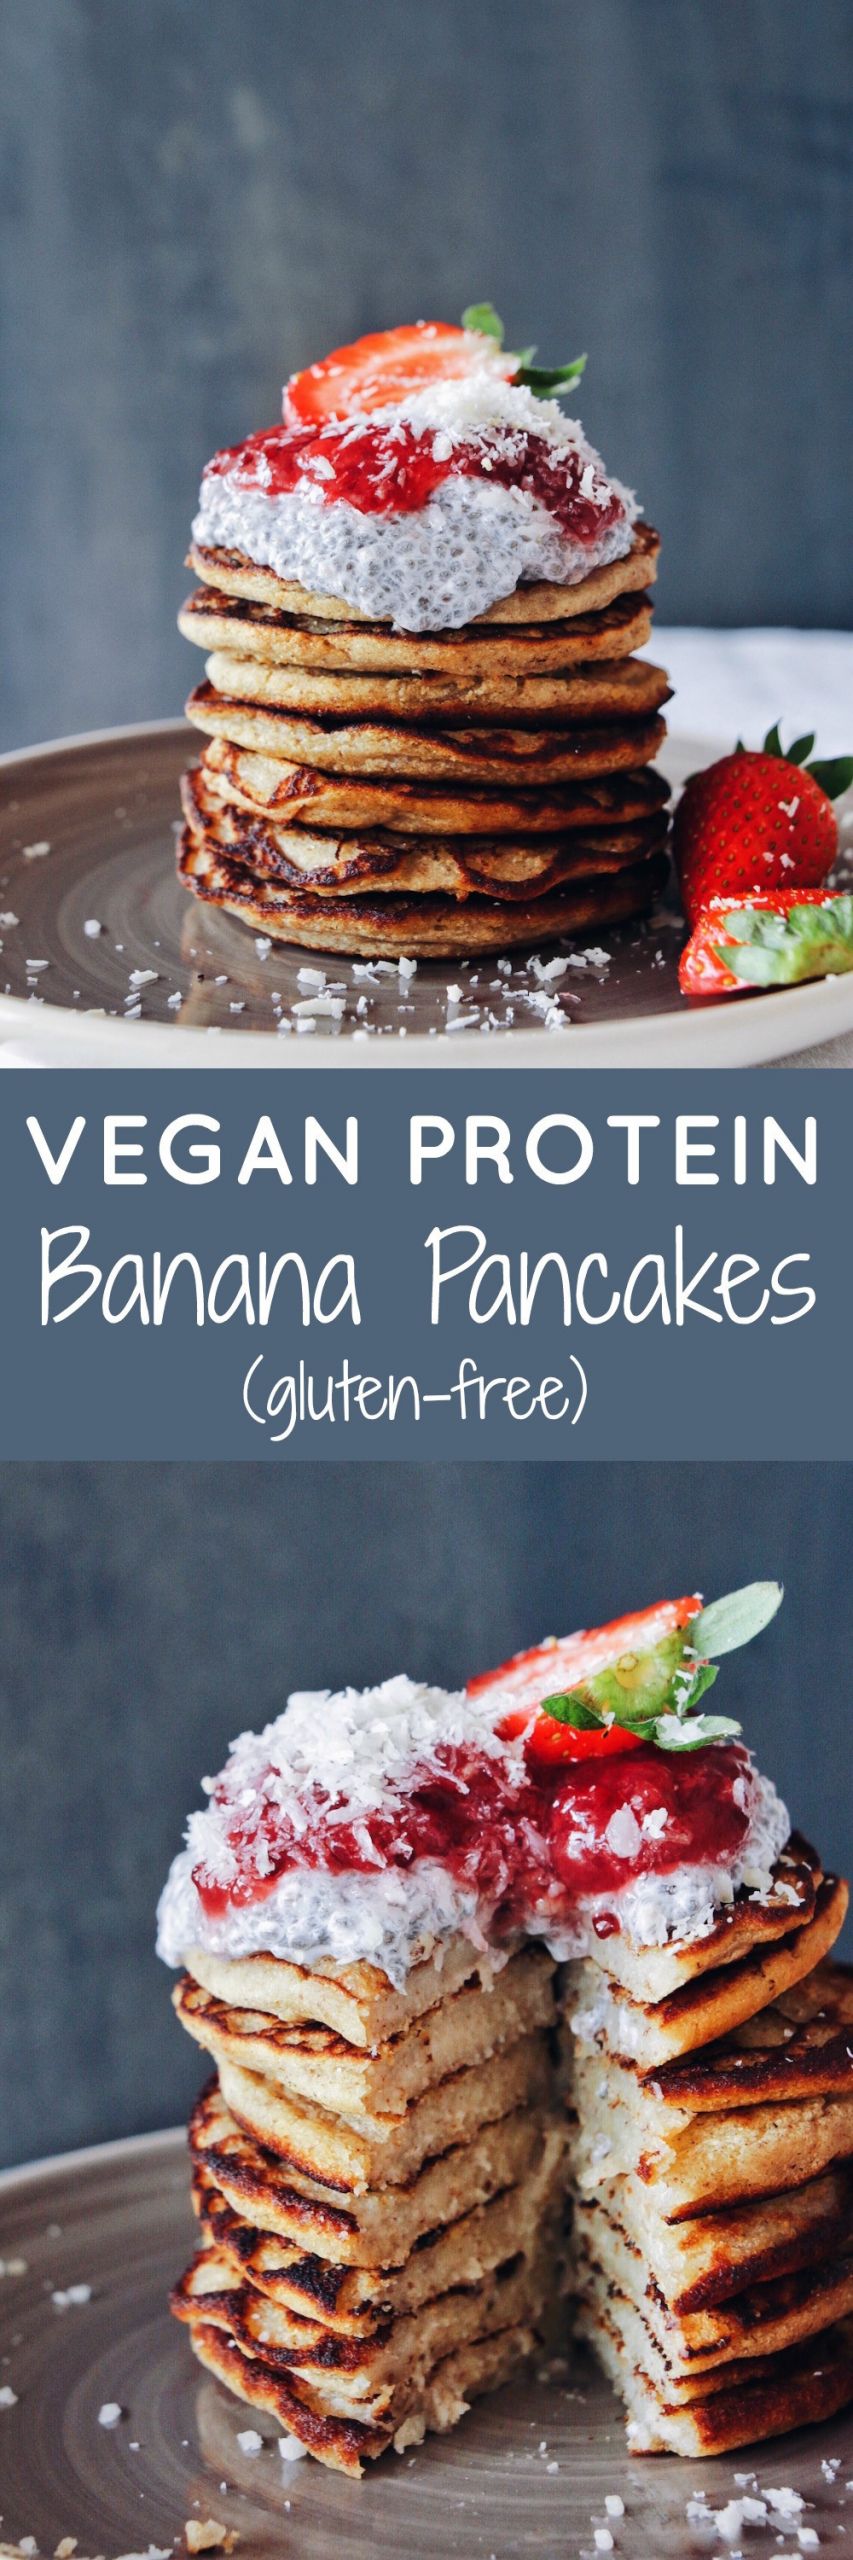 Vegan Protein Pancakes
 VEGAN PROTEIN BANANA PANCAKES